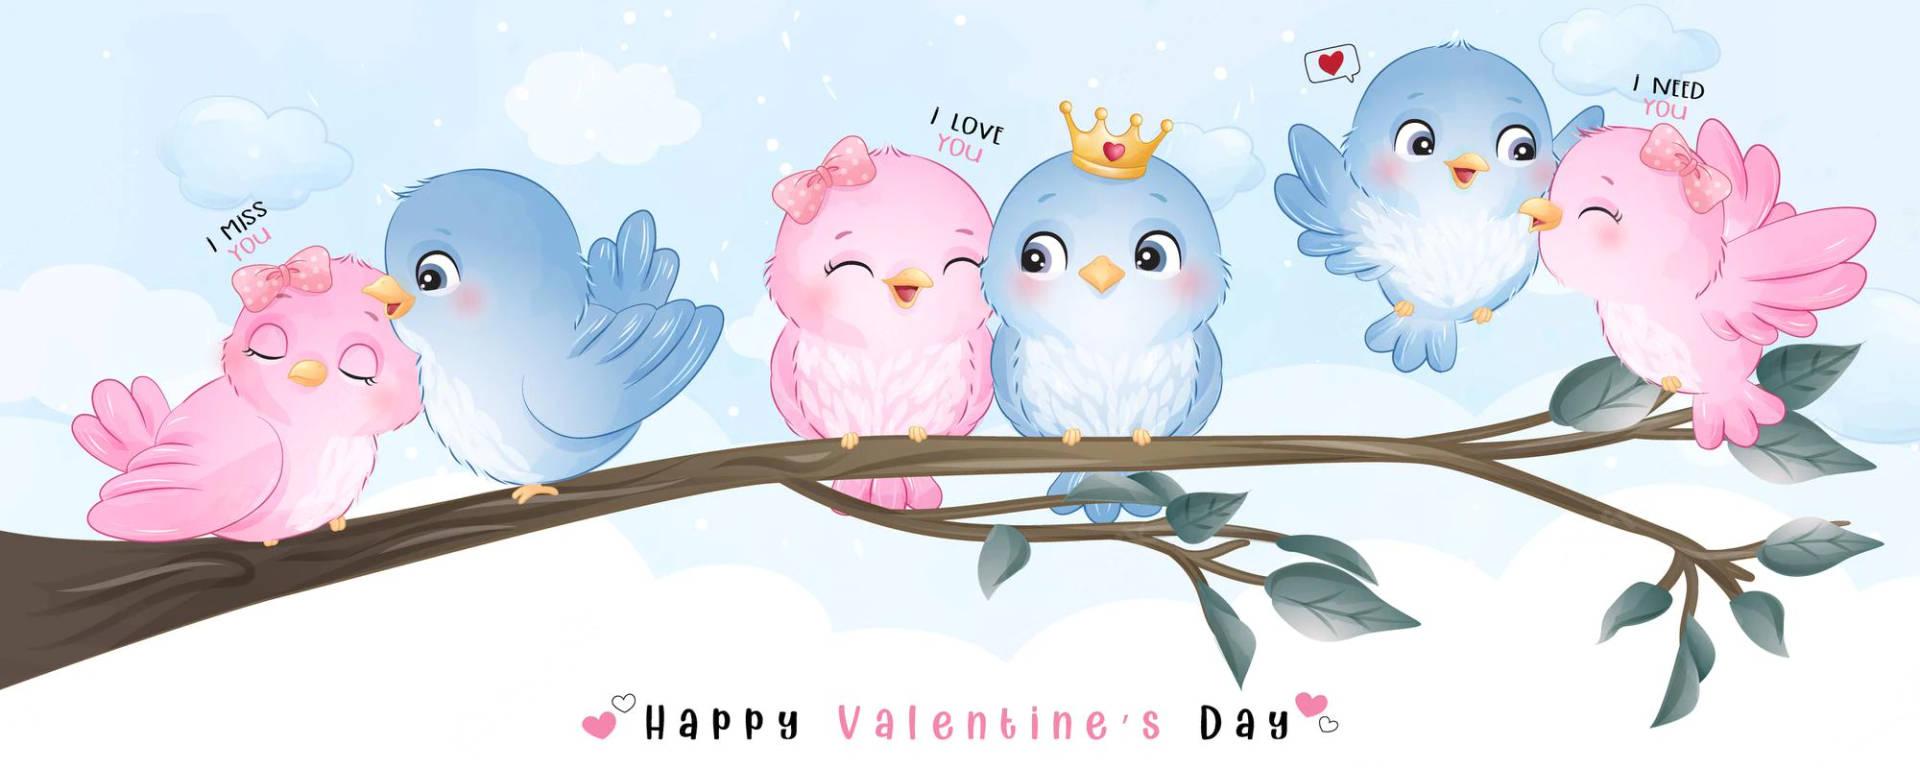 Valentines' Pink Love Birds Wallpaper